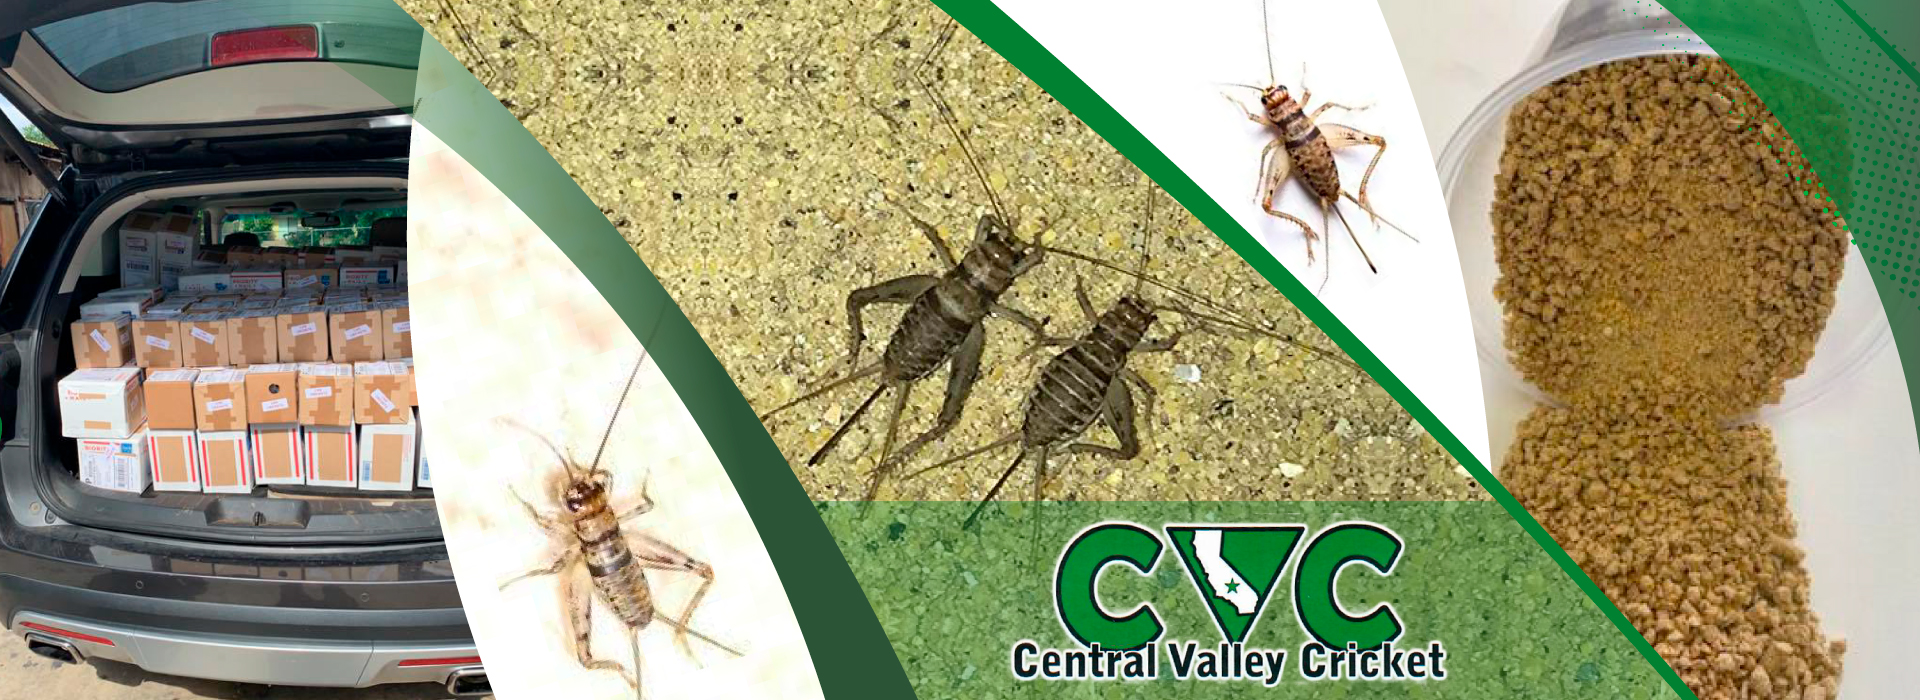 slider - Central Valley Cricket